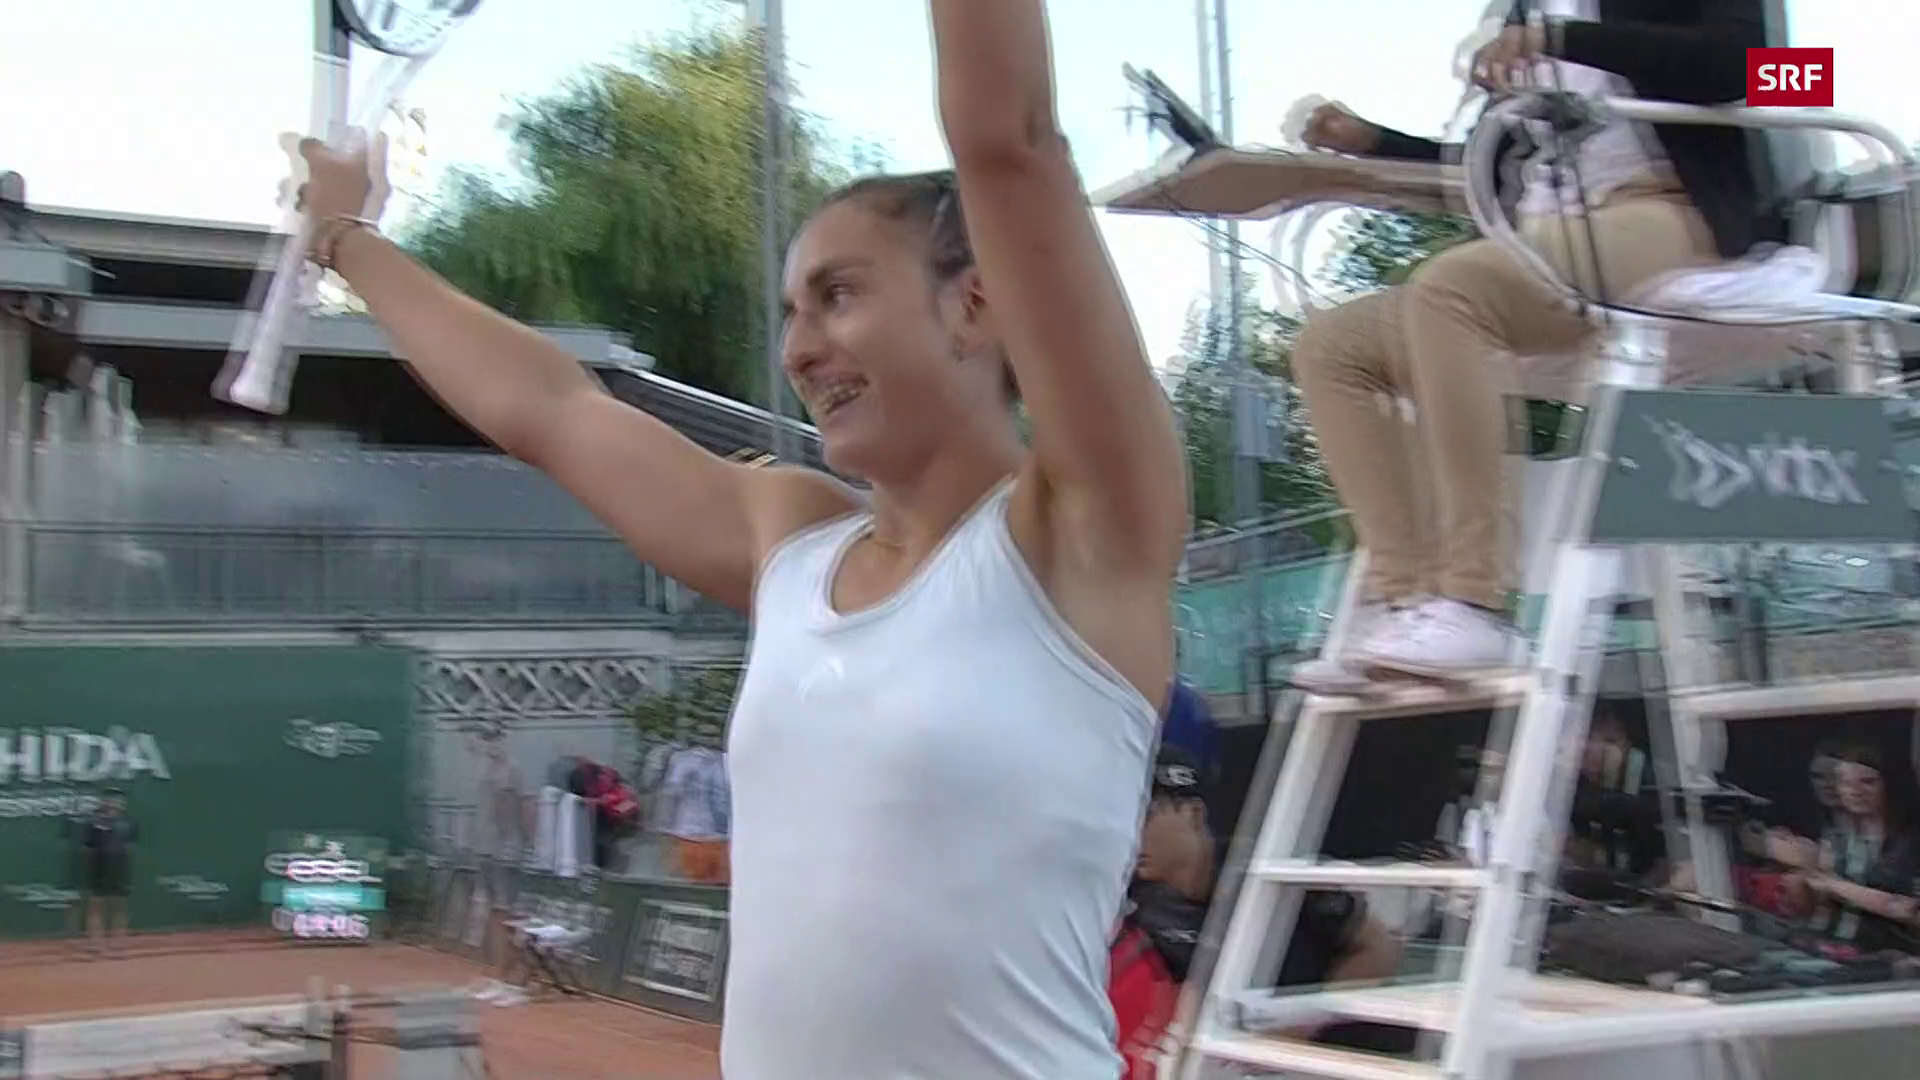 In-Albon ausgeschieden - Erster WTA-Sieg Bandecchi mit Ausrufezeichen in Lausanne - Sport